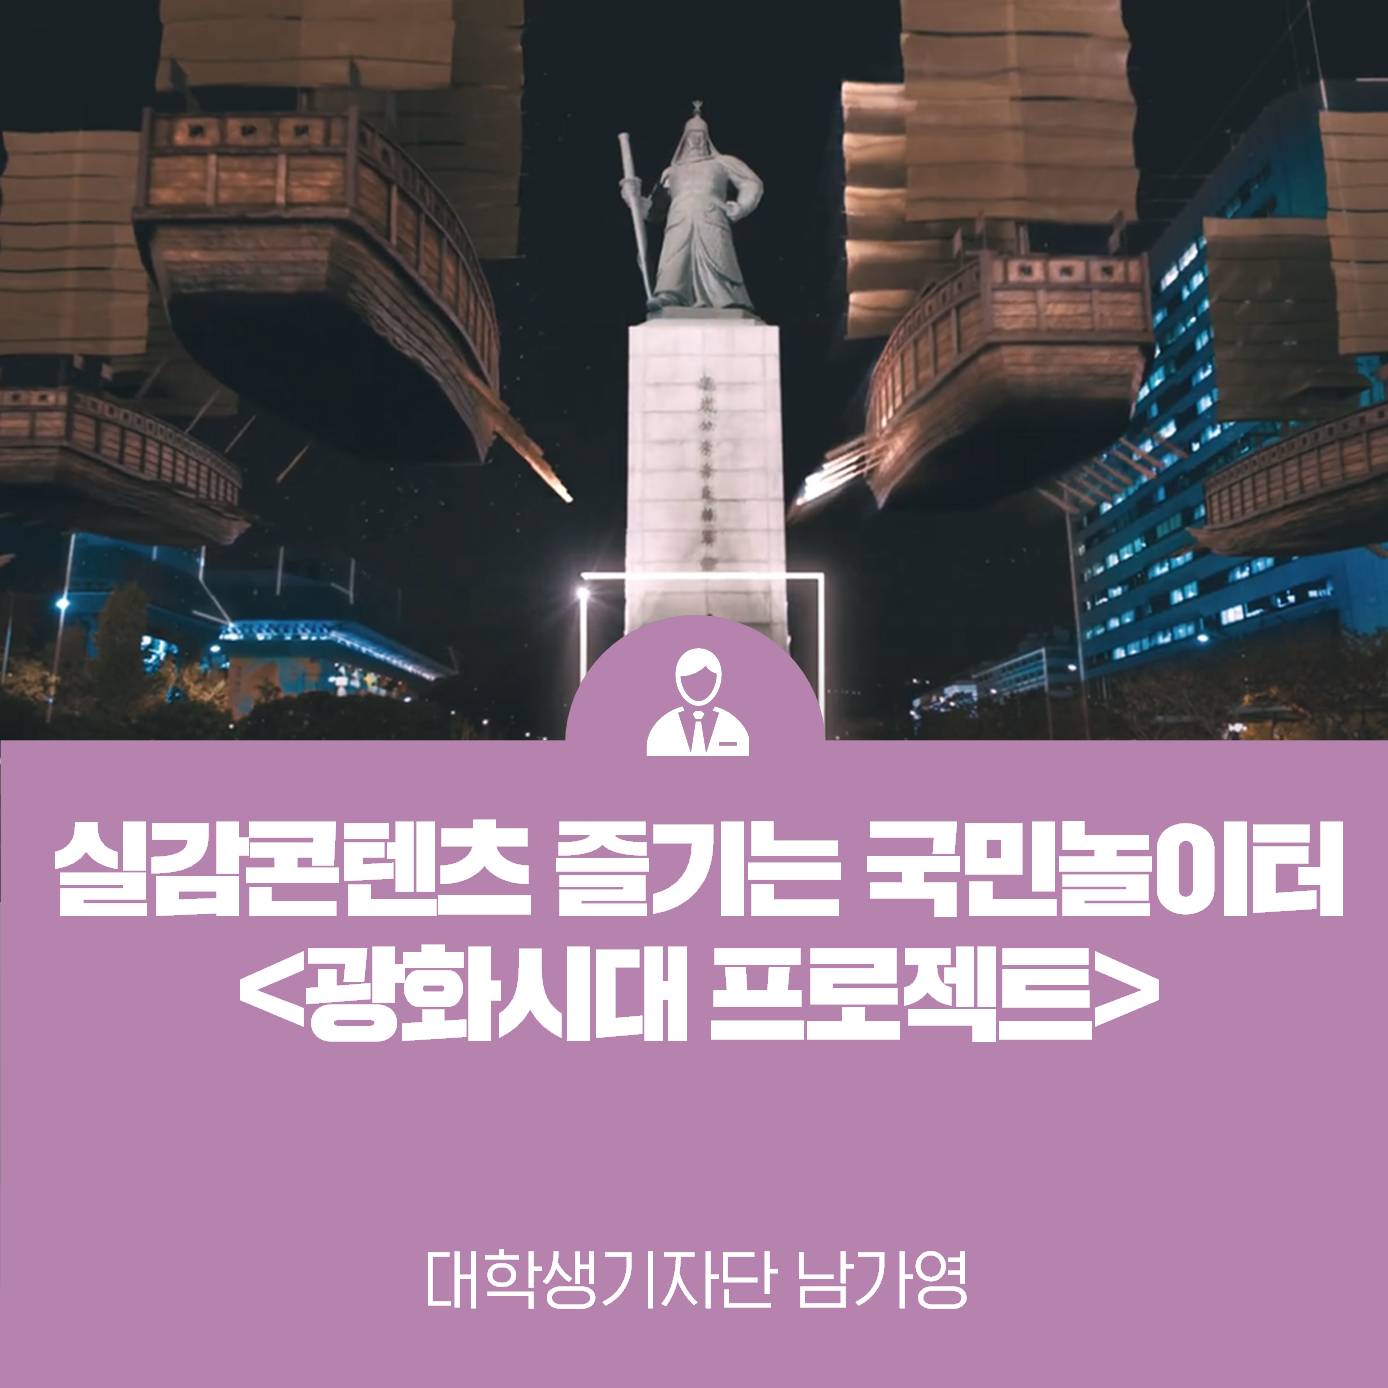 실감콘텐츠를 즐기는 국민놀이터 한국콘텐츠진흥원, 광화시대 프로젝트